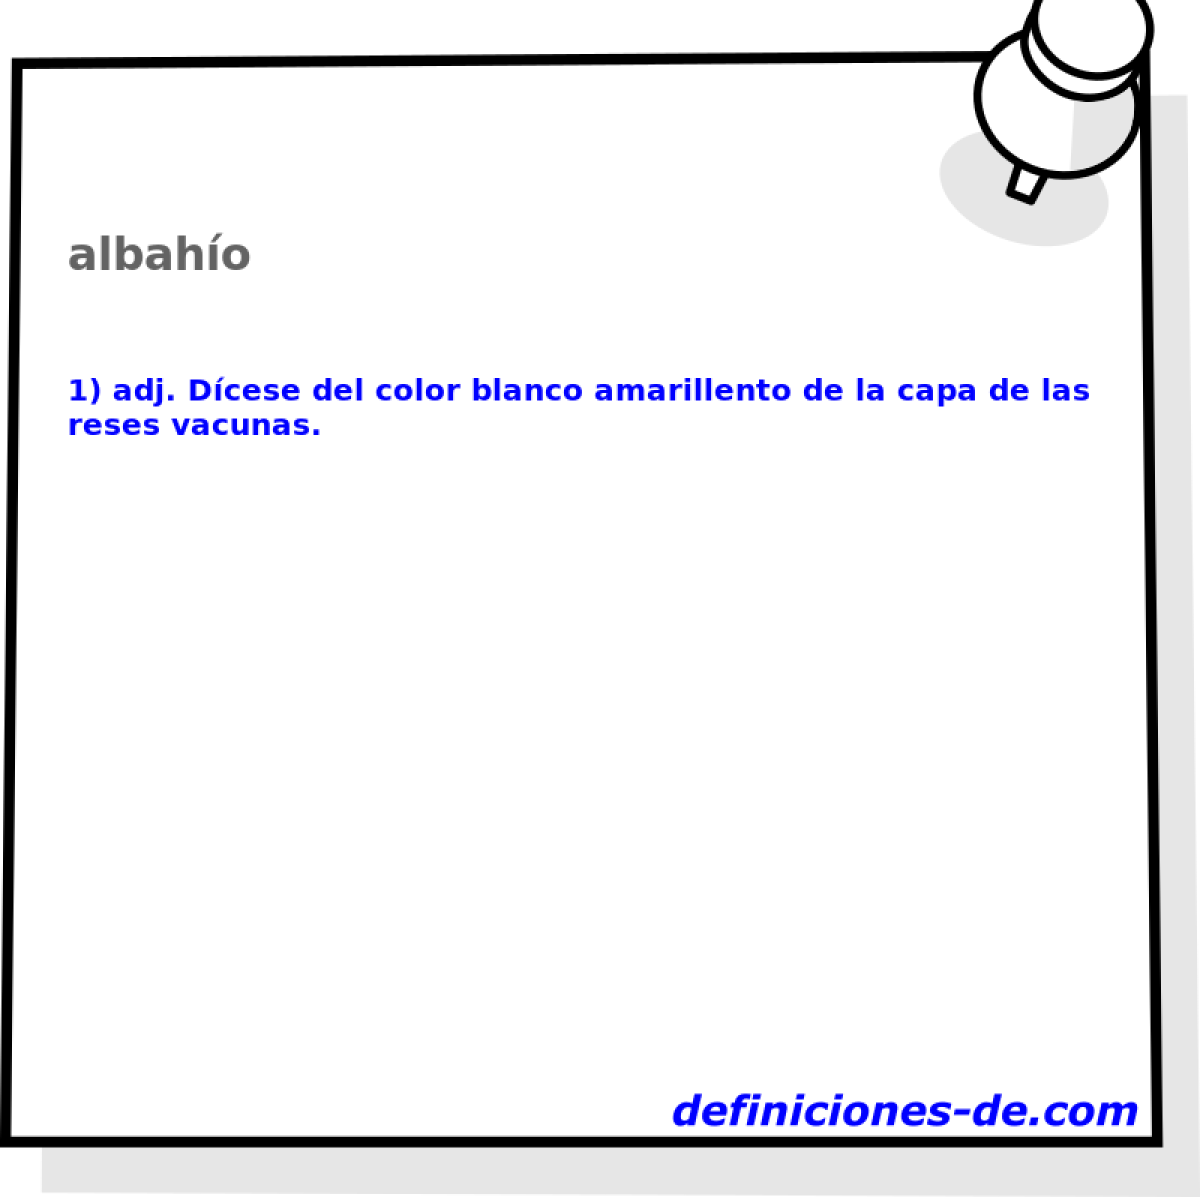 albaho 